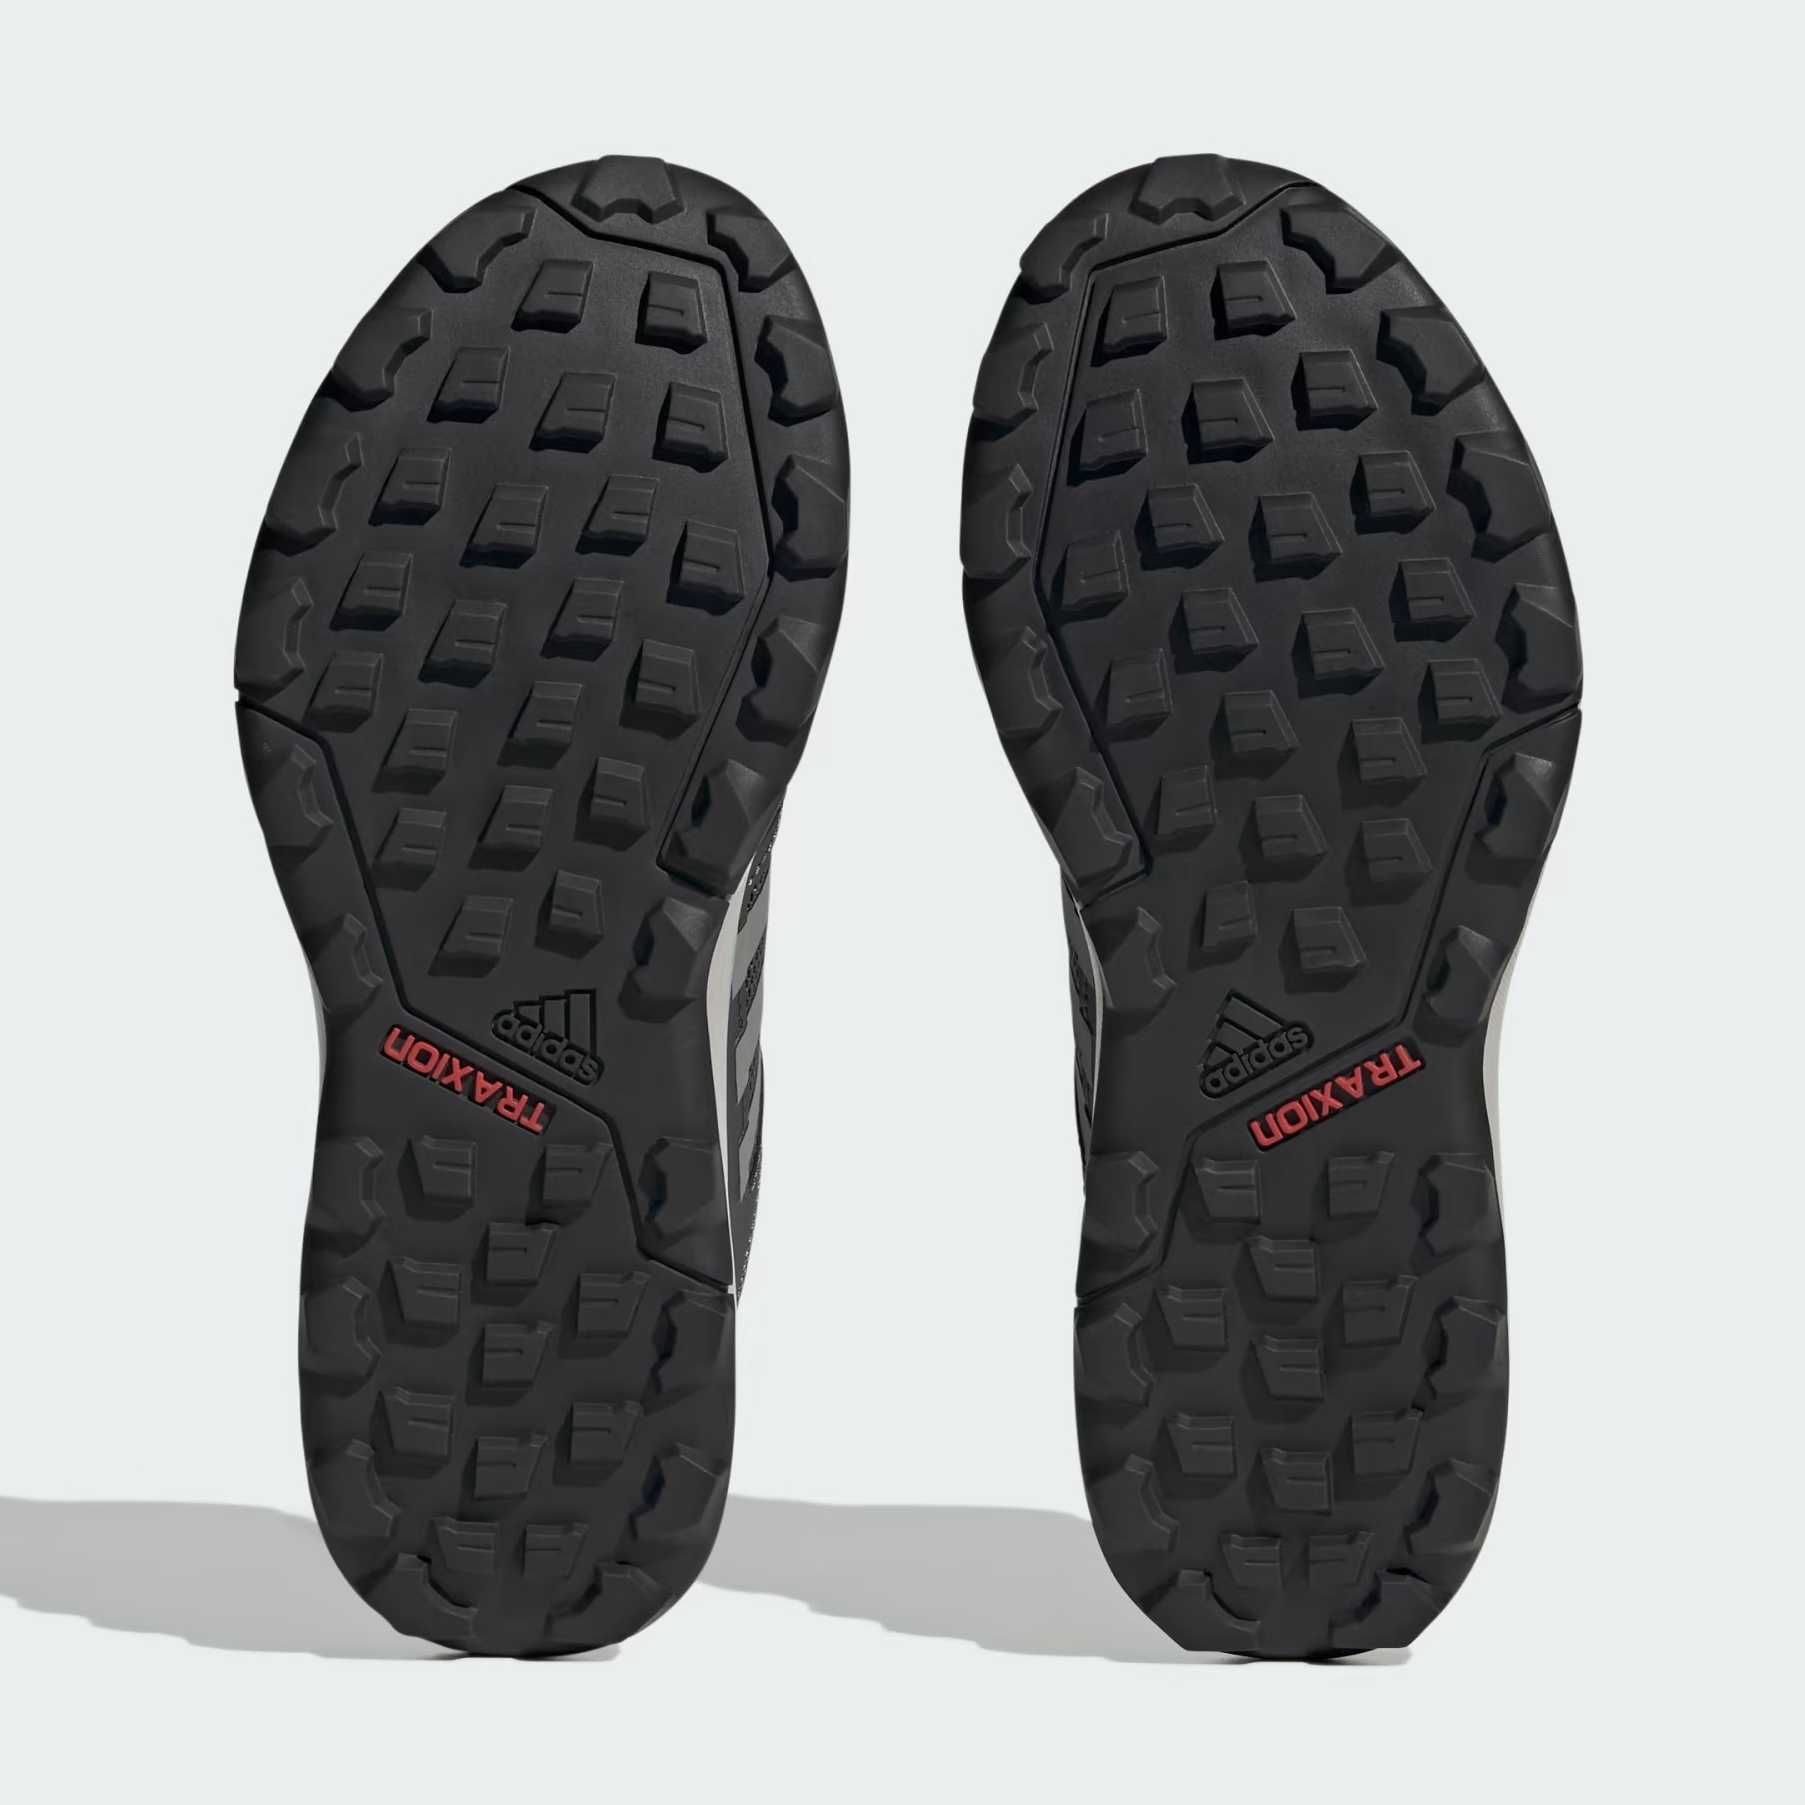 Adidas damskie buty trekkingowe Tracerocker 2 GTX W r. 38 | H05684